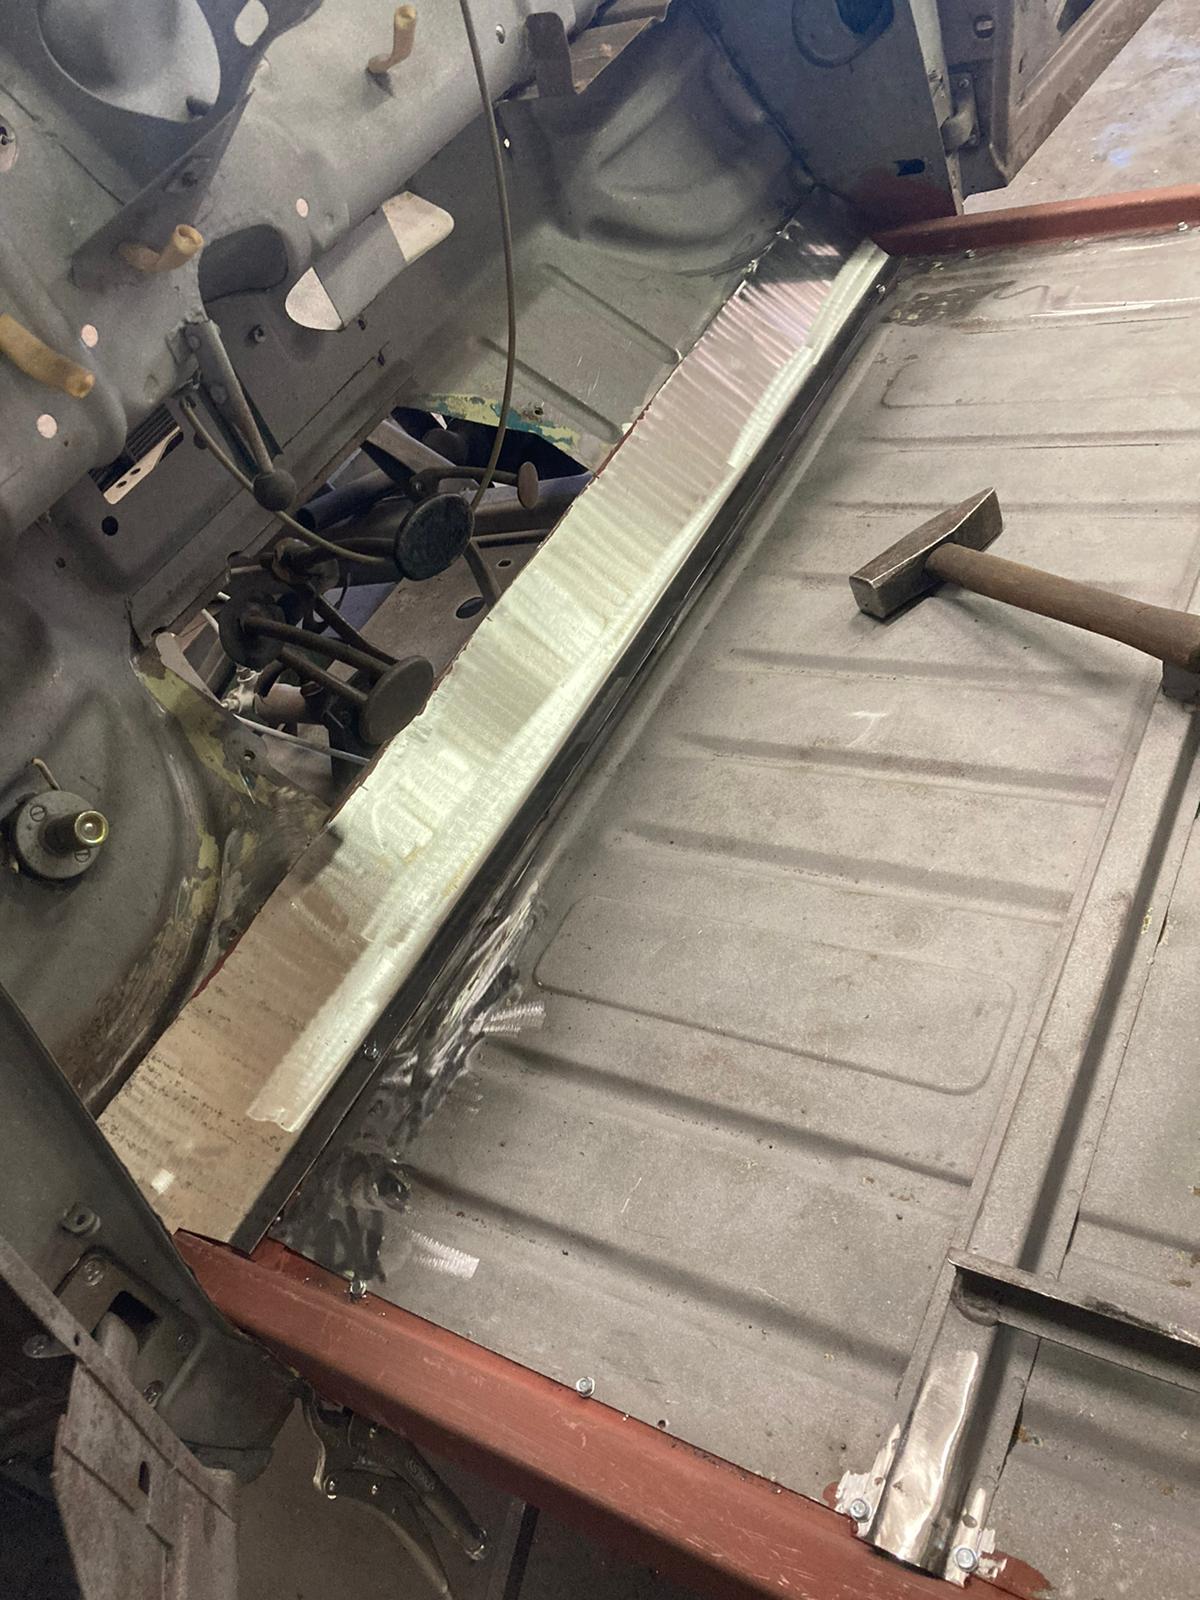 restauration restaurierung wartburg 311 cabrio karosserie bodenbleche